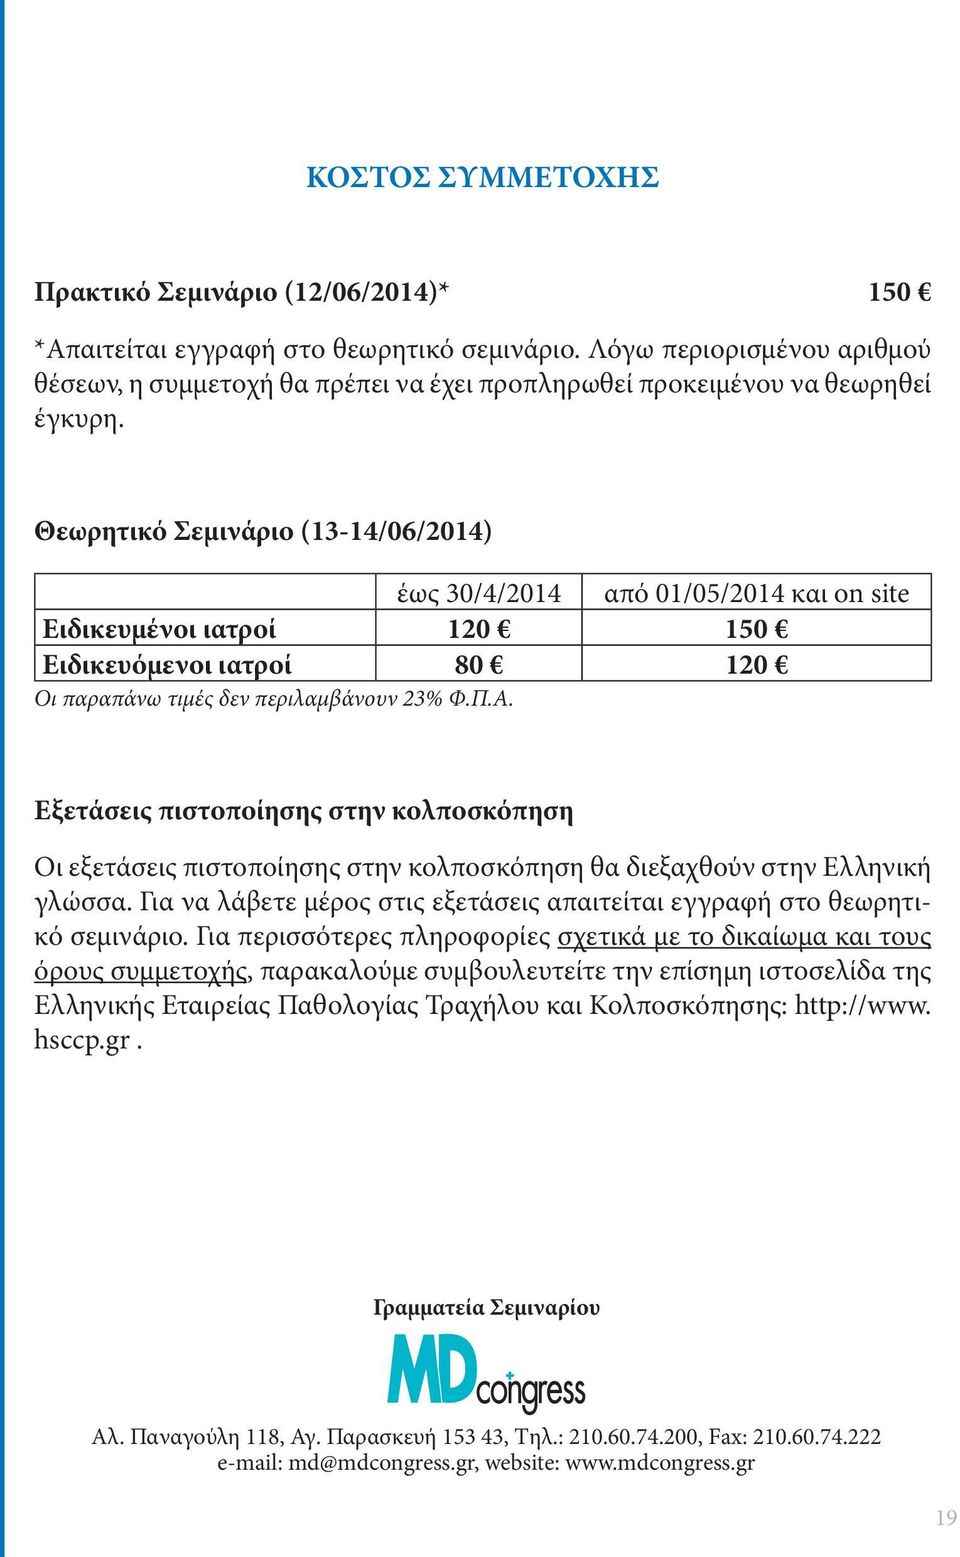 .. Εξετάσεις πιστοποίησης στην κολποσκόπηση ι εξετάσεις πιστοποίησης στην κολποσκόπηση θα διεξαχθούν στην Ελληνική γλώσσα.